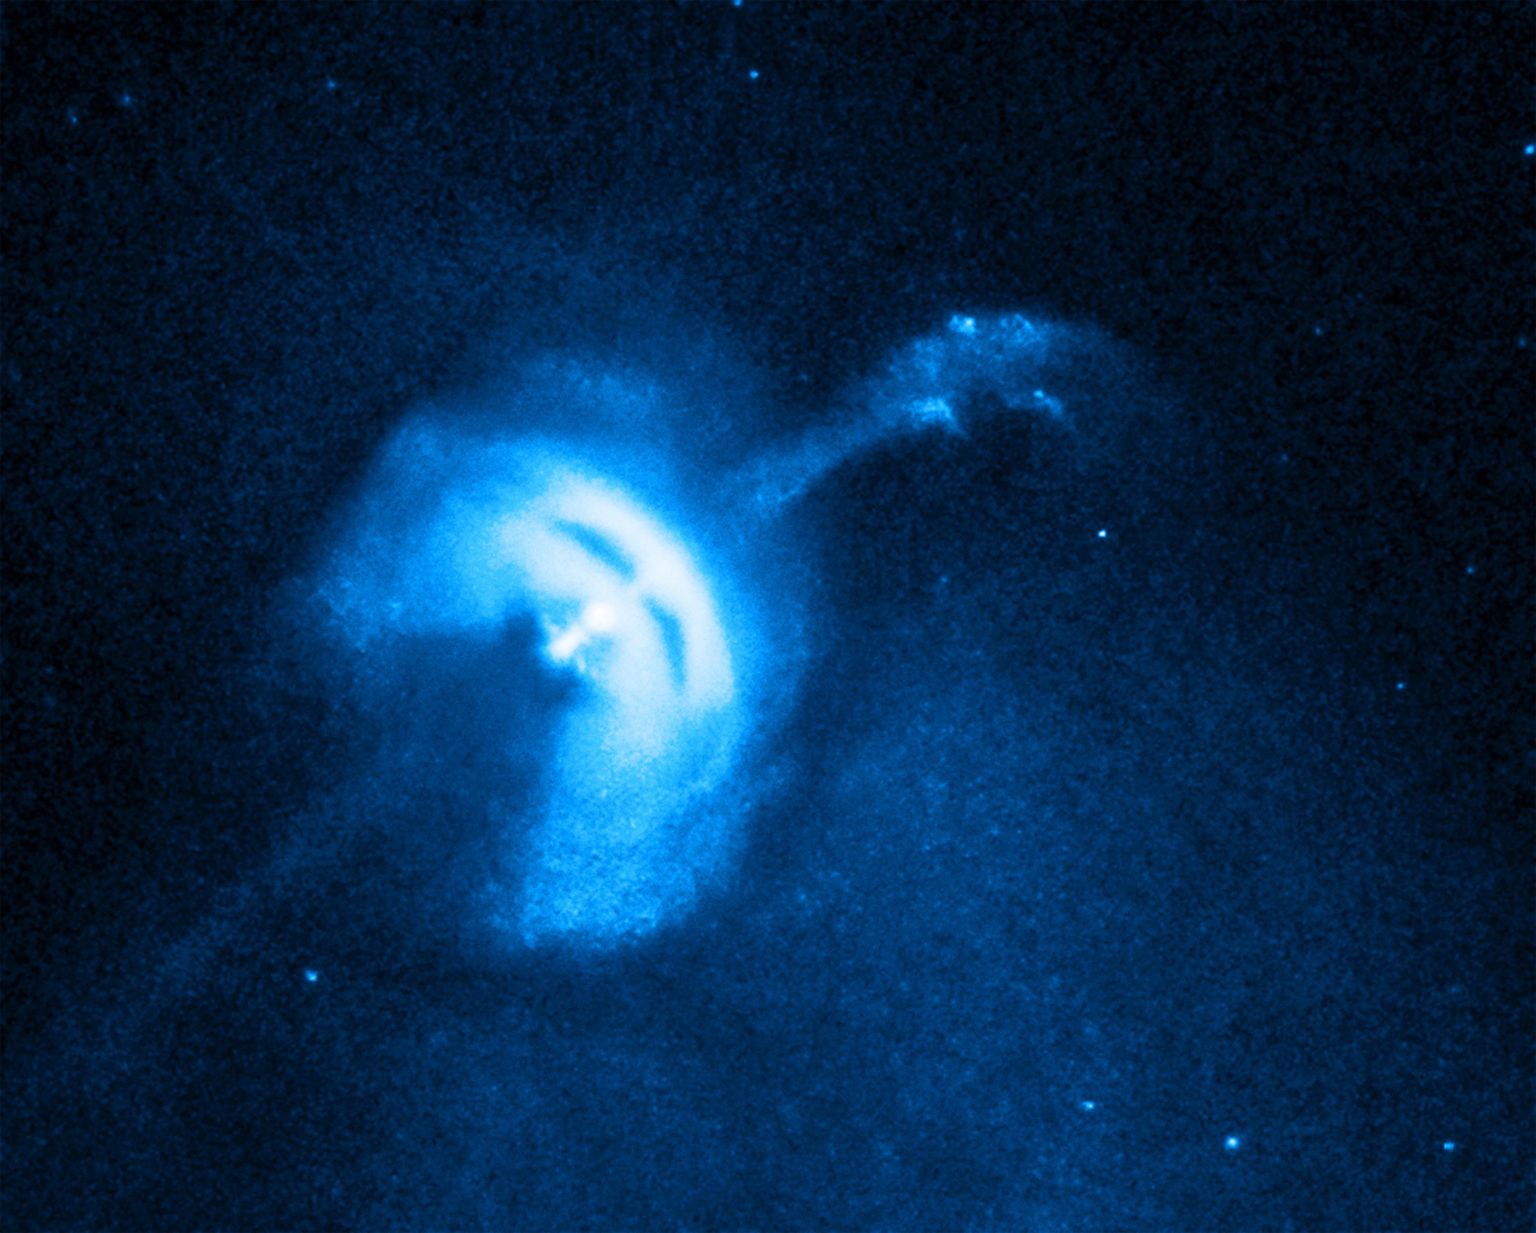 Teadlased on leidnud uue võimaluse, kuidas avastada pöörlevaid neutrontähti – pulsareid.